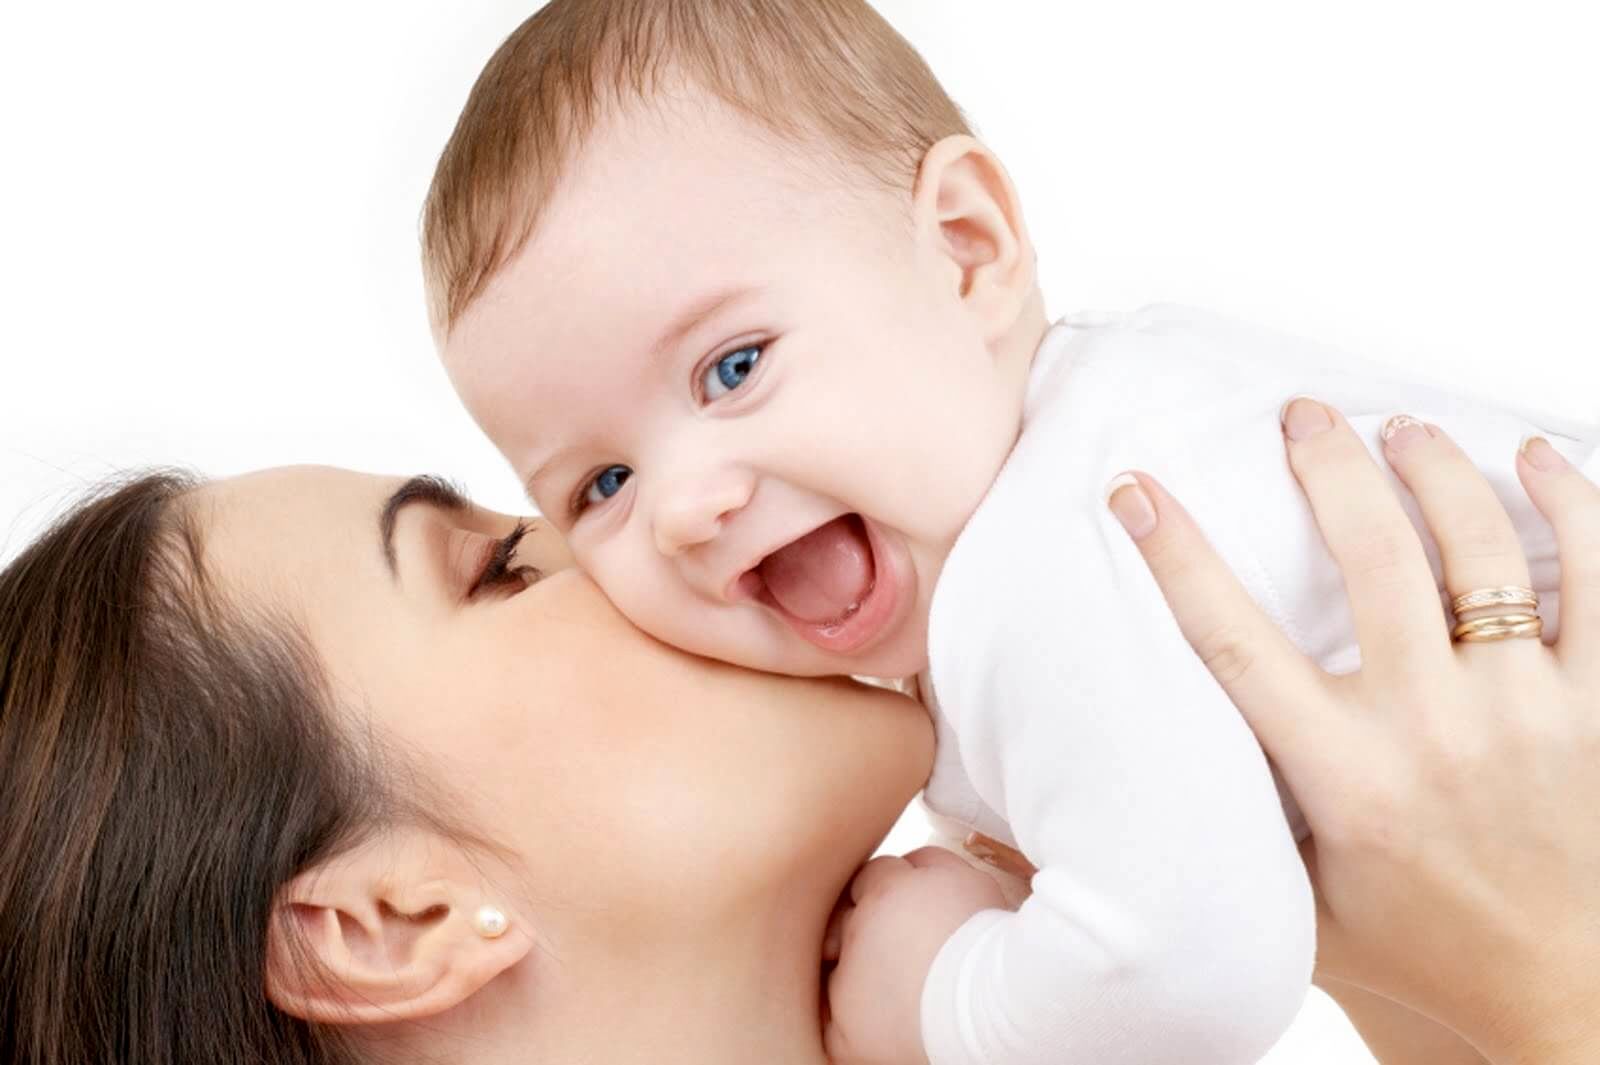 فواید شگفت انگیز بوسیدن کودک توسط والدین